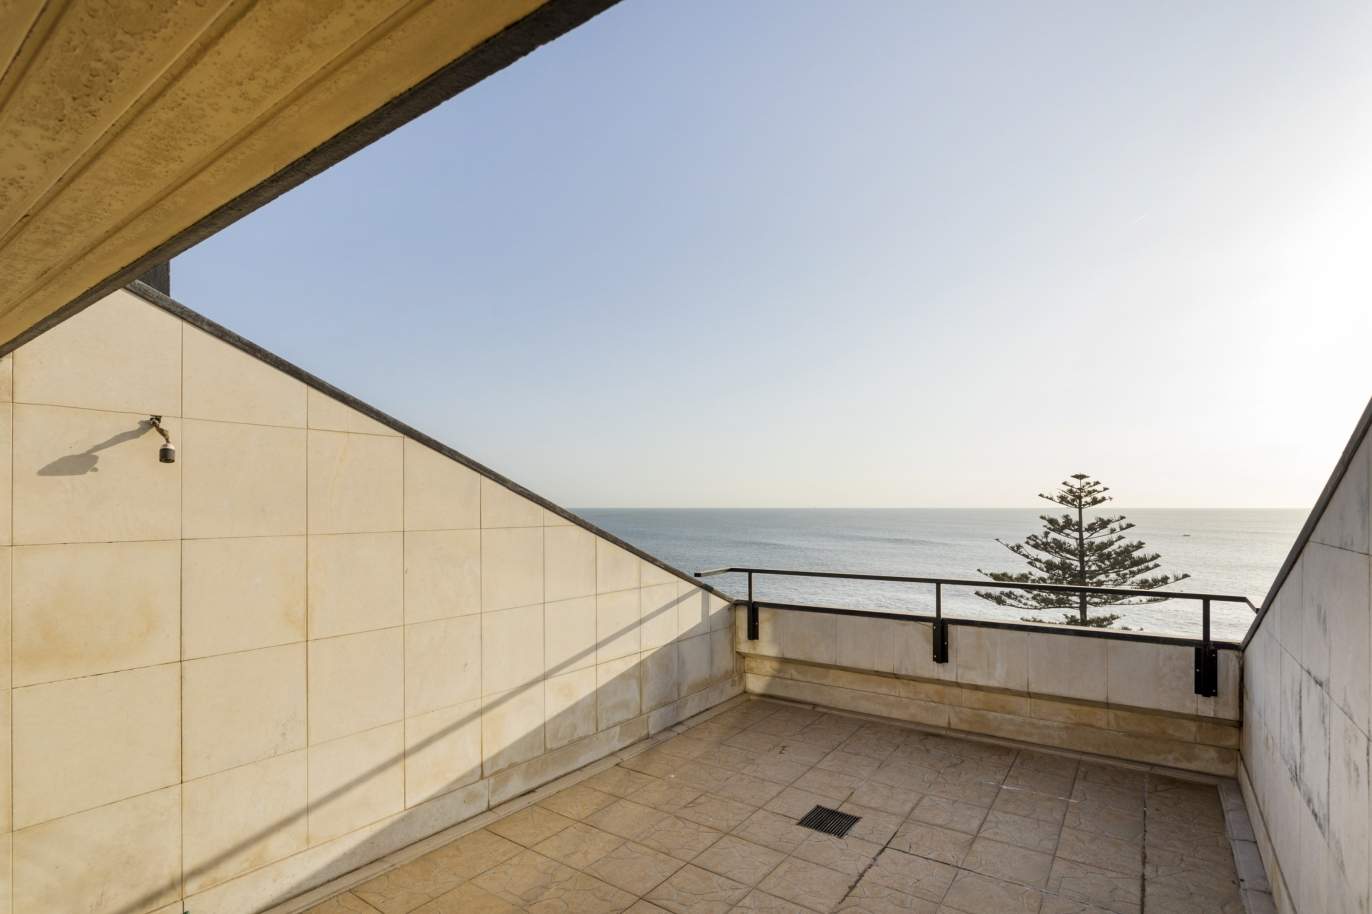 Venda: Penthouse duplex com terraço, em 1.ª linha de mar, Foz do Douro_195641